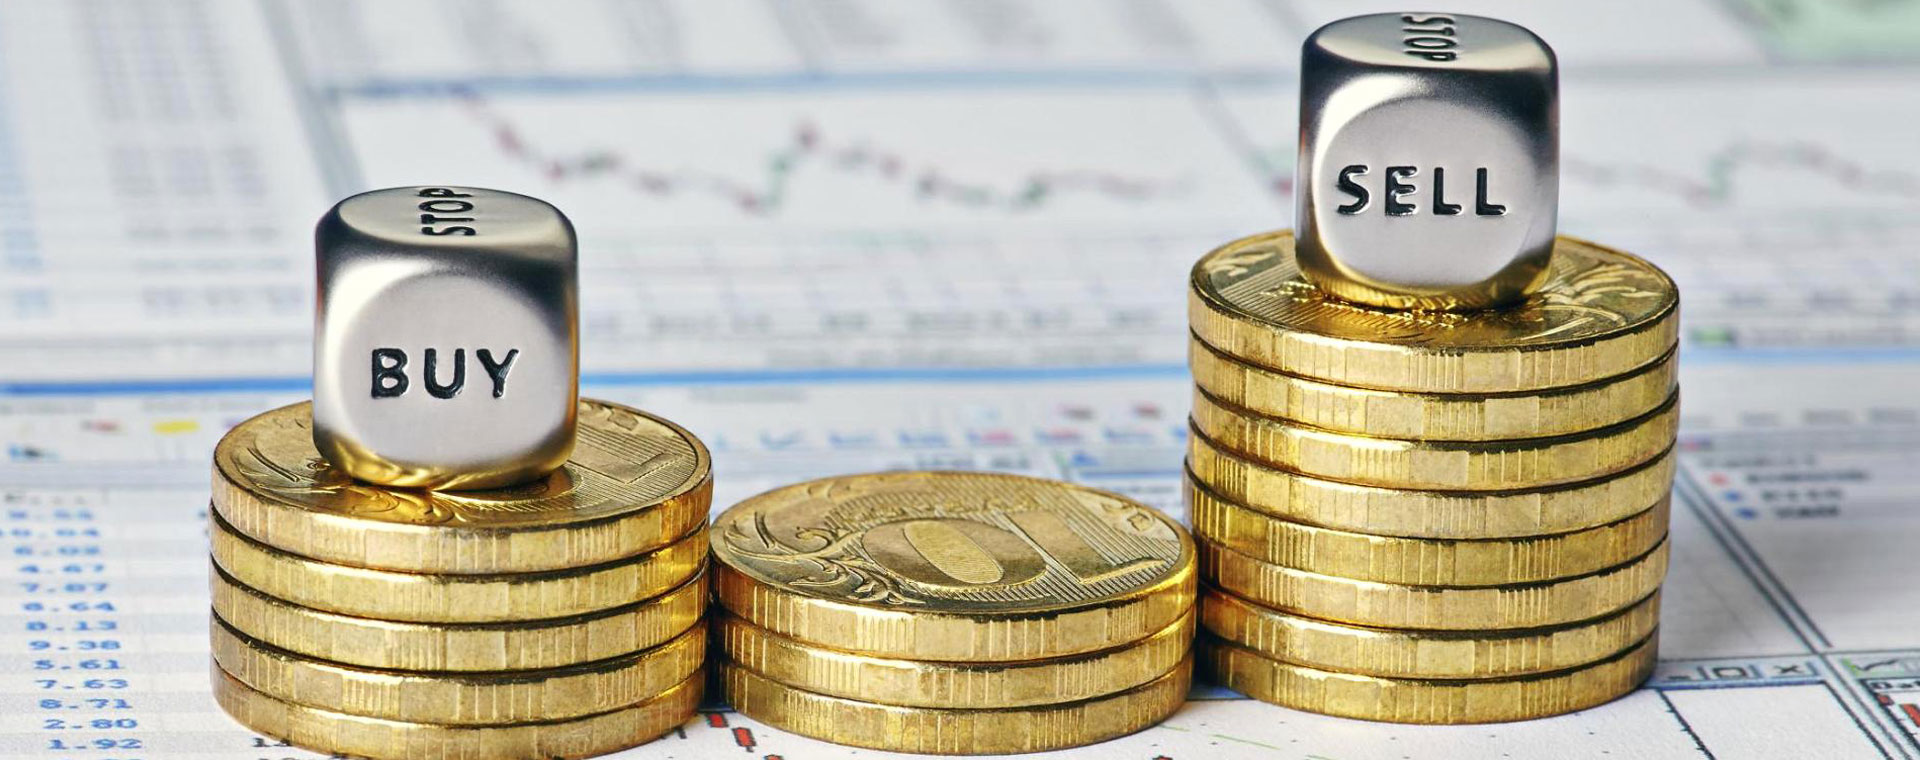 Сбербанк планирует 16 ноября разместить новый выпуск облигаций на 3 млрд руб